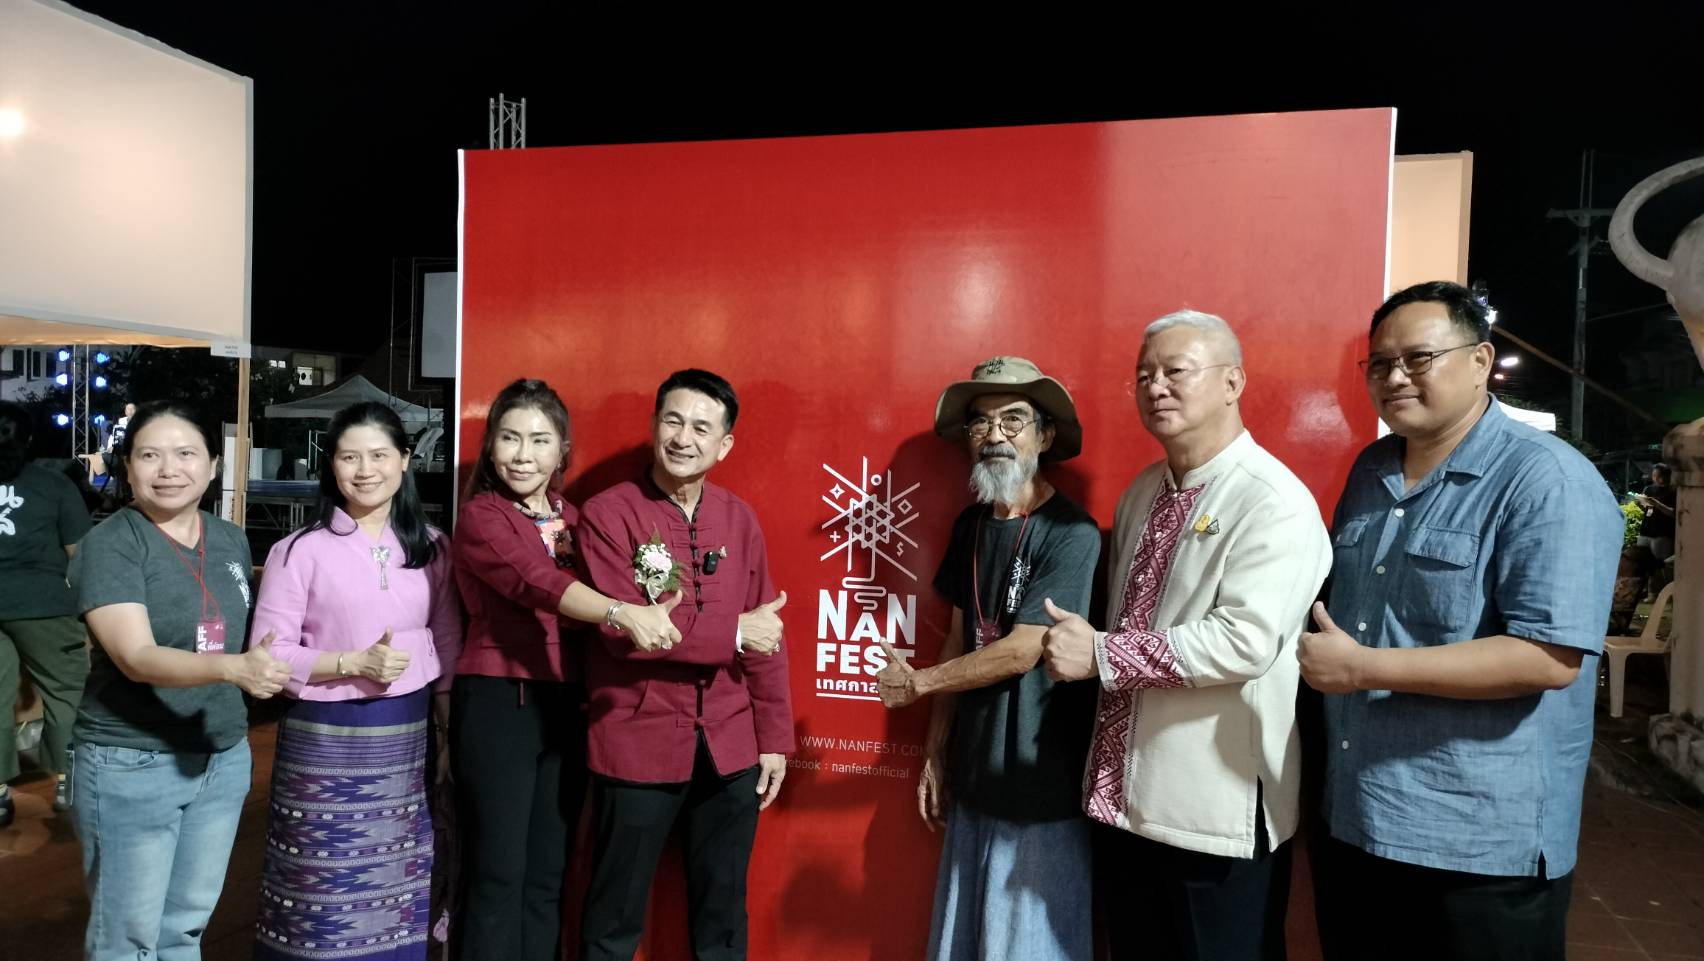 นพ.ชลน่าน ศรีแก้ว รมว.สาธารณสุข ร่วมงาน Nan Fest Showcase ขับเคลื่อนงานศิลปวัฒนธรรมที่สำคัญของน่าน